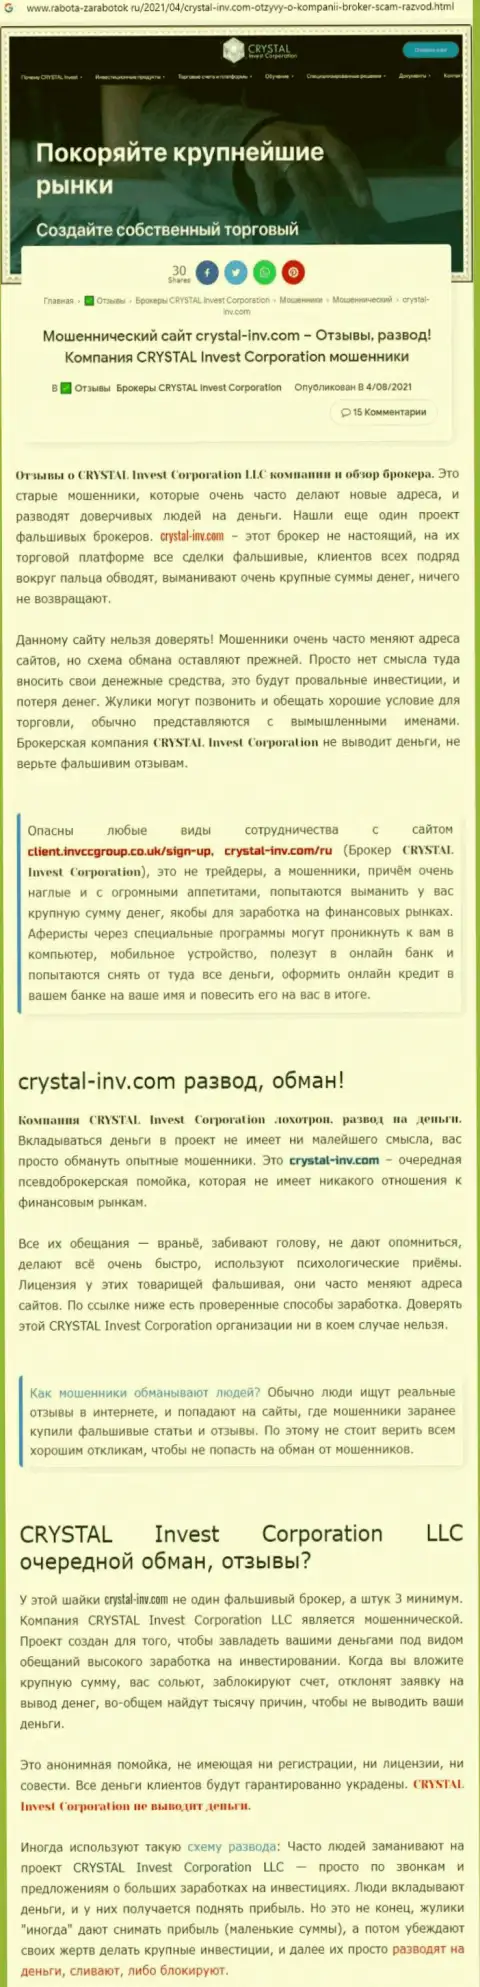 Материал, разоблачающий организацию CrystalInvest, который взят с сайта с обзорами афер различных организаций